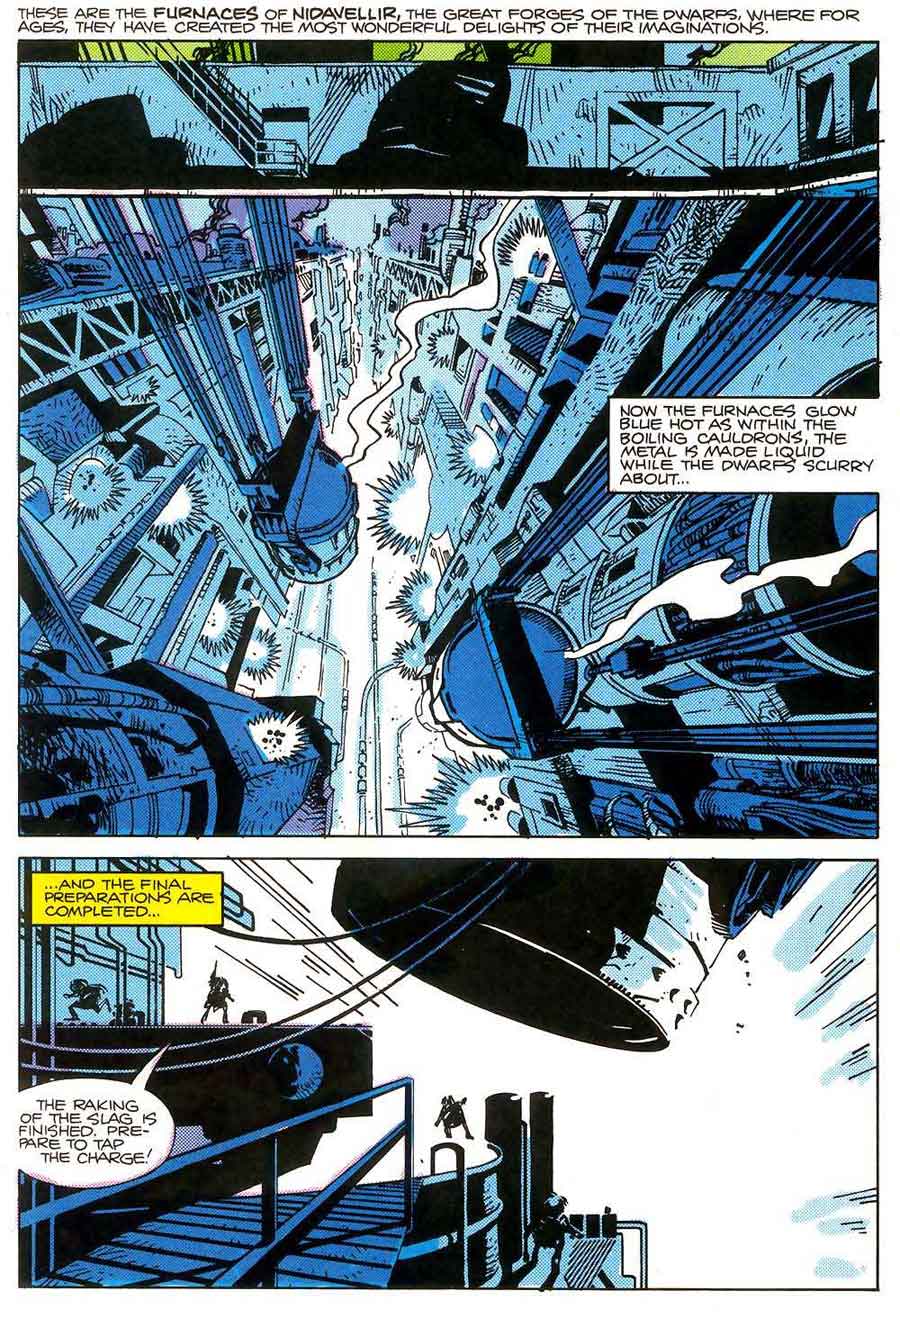 Walt Simonson 1980s marvel comic book page - Thor #339